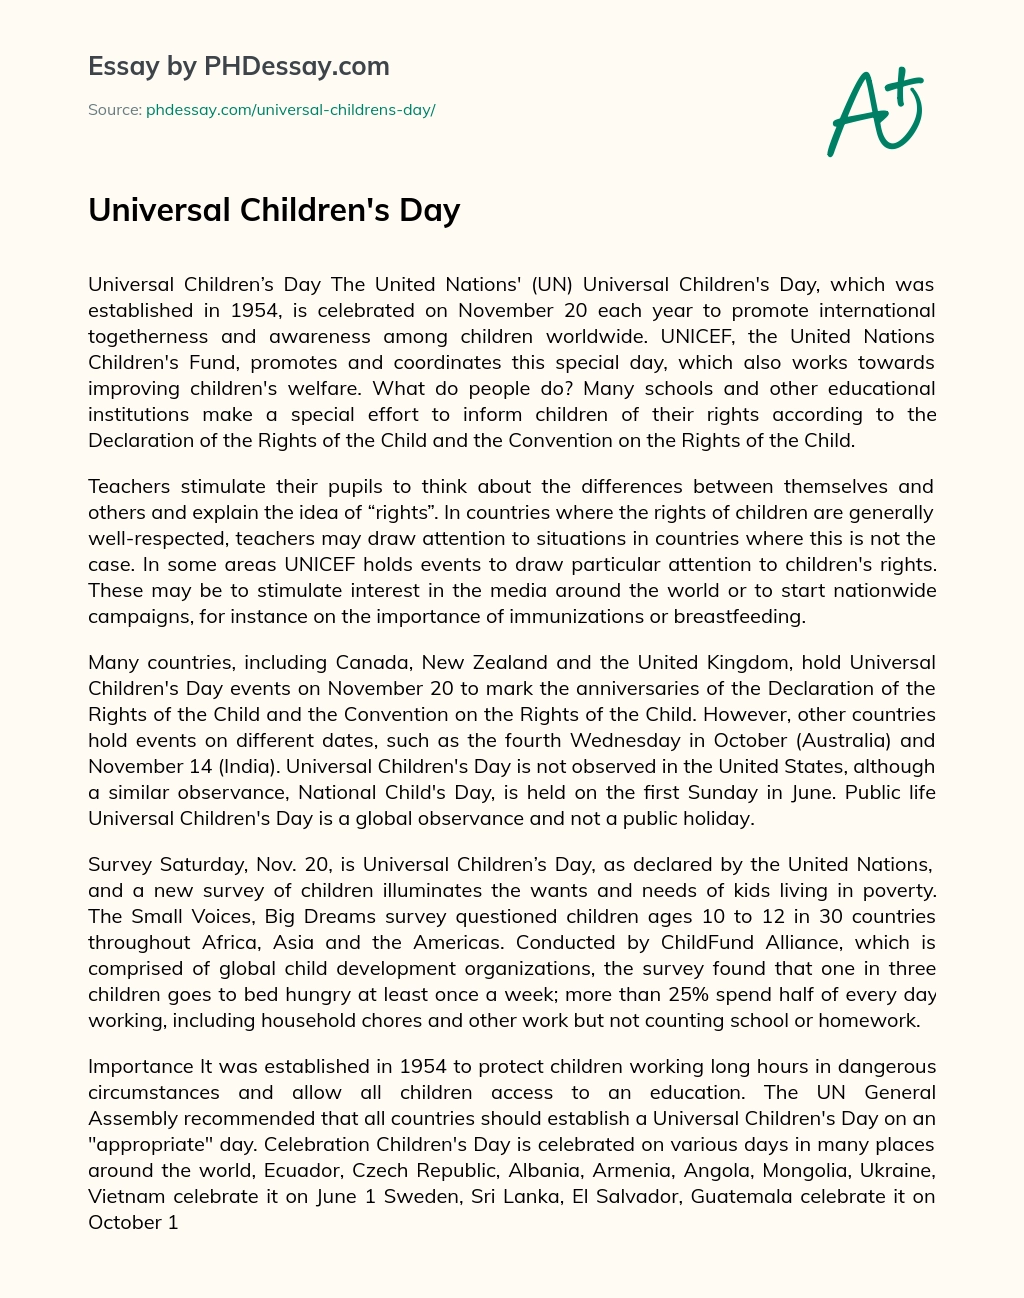 Universal Children’s Day essay